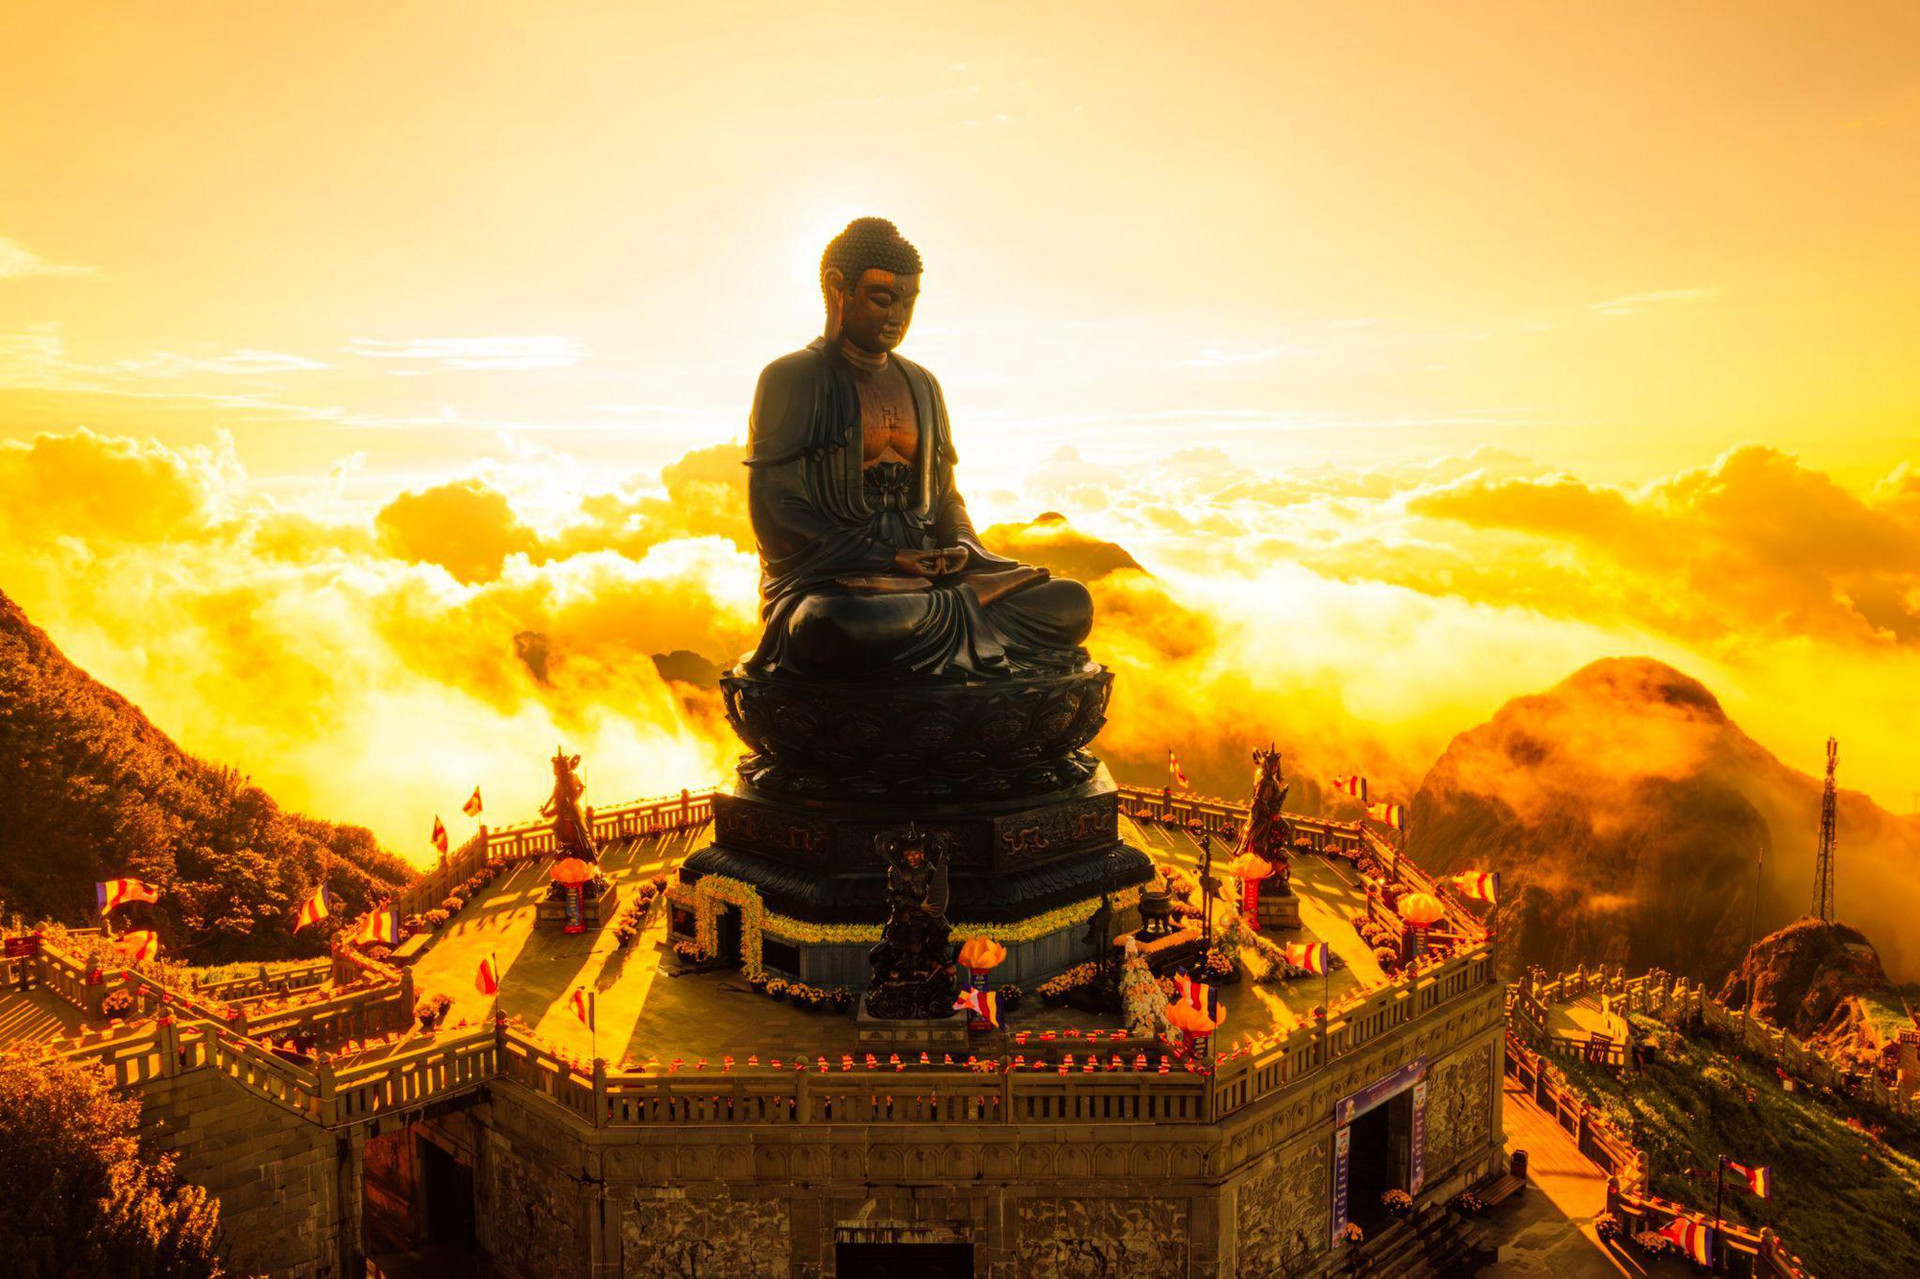 Giữa mây ngàn gió núi có tiếng chuông chùa vang vọng, Đại Tượng Phật A Di Đà hiện lên từ bi giữa đất trời, càng khiến khung cảnh thêm huyền hoặc, an yên - Ảnh: Hoàng Trung Hiếu